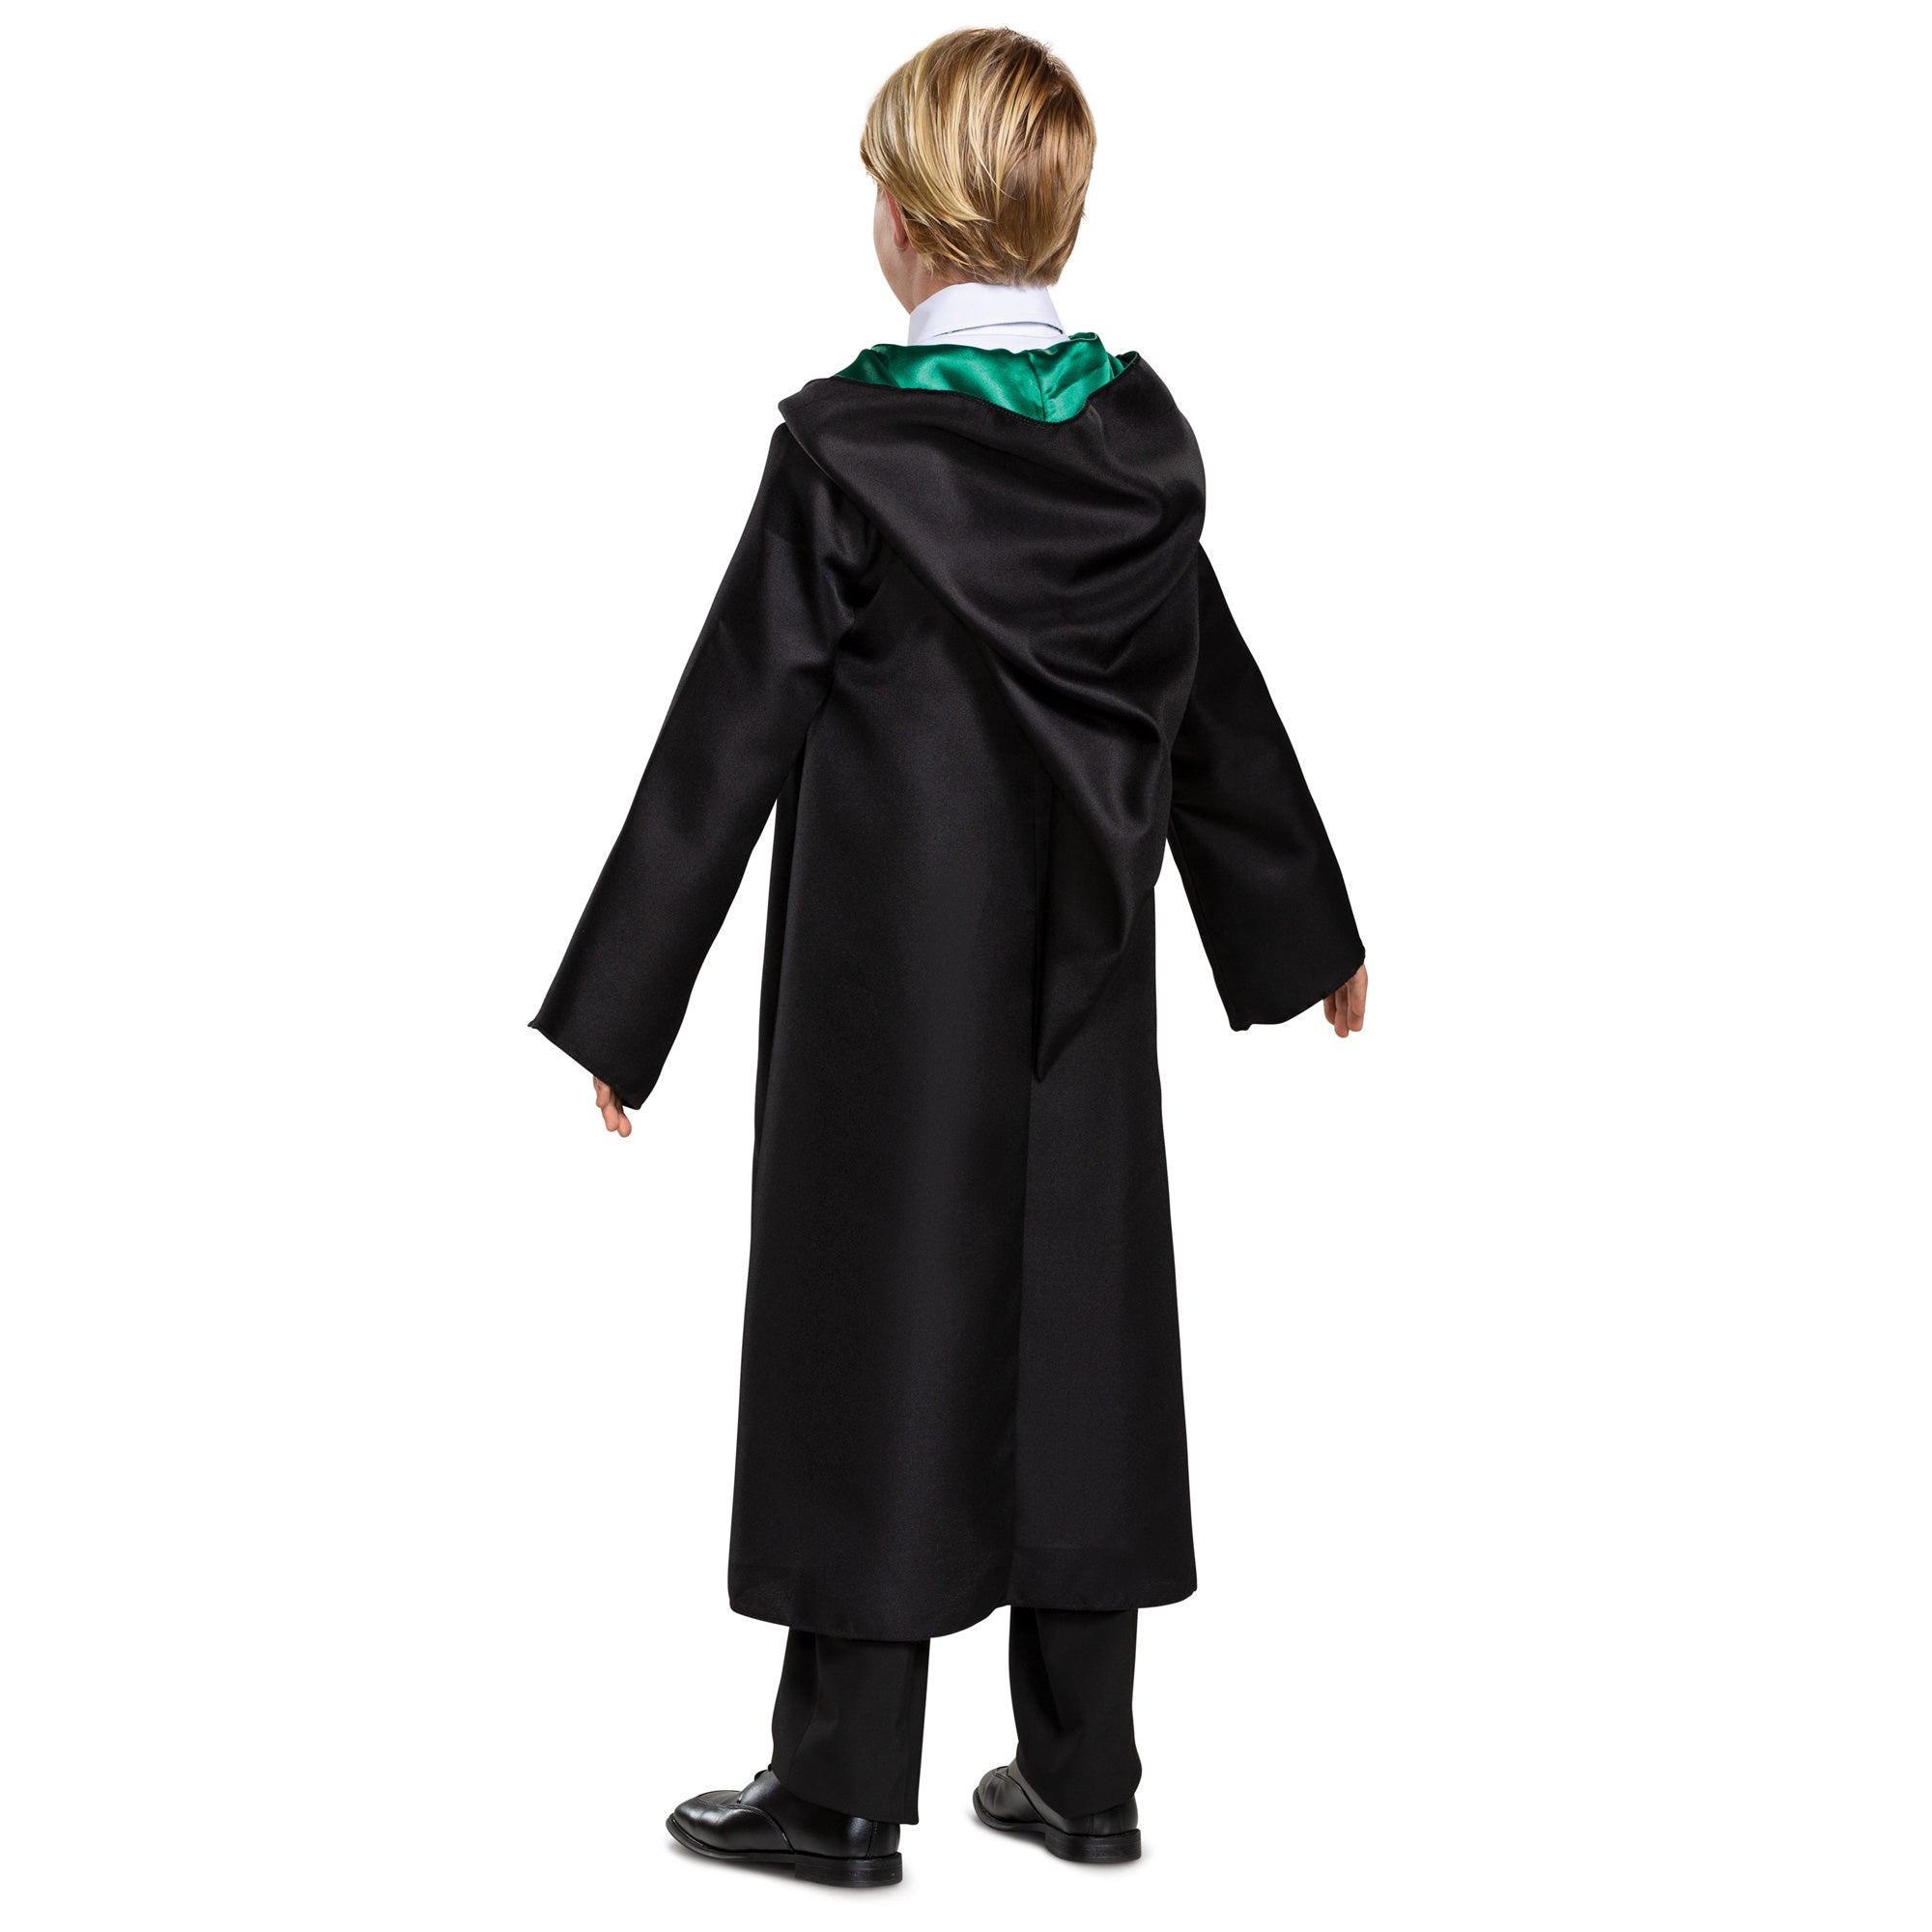 Slytherin Harry Potter School girl lingerie costume